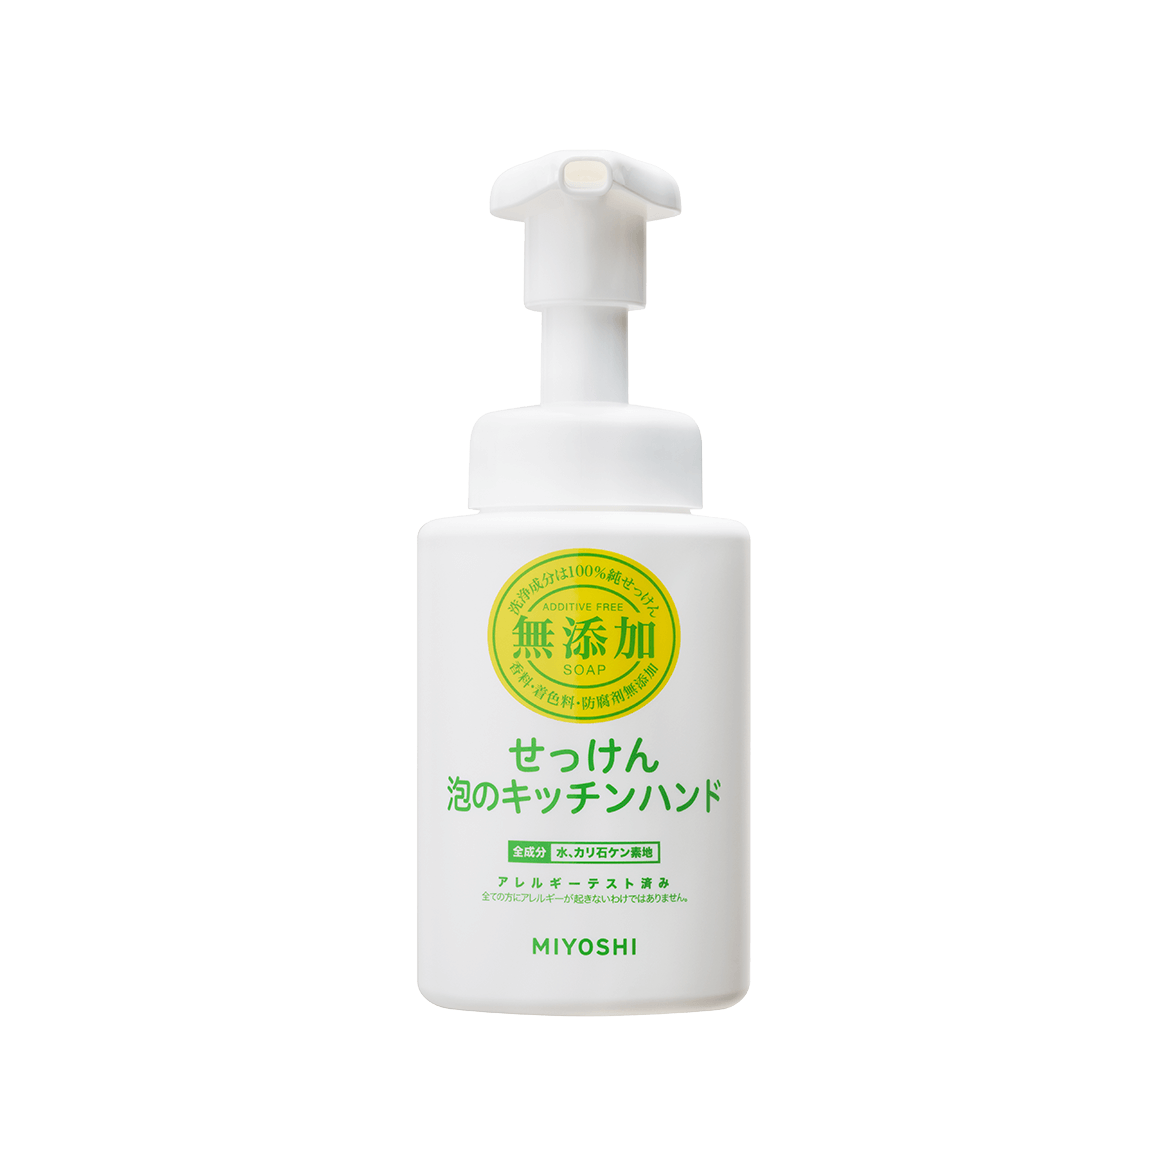 無添加せっけん泡のキッチンハンド 本体(250ml) – MIYOSHI SOAP 